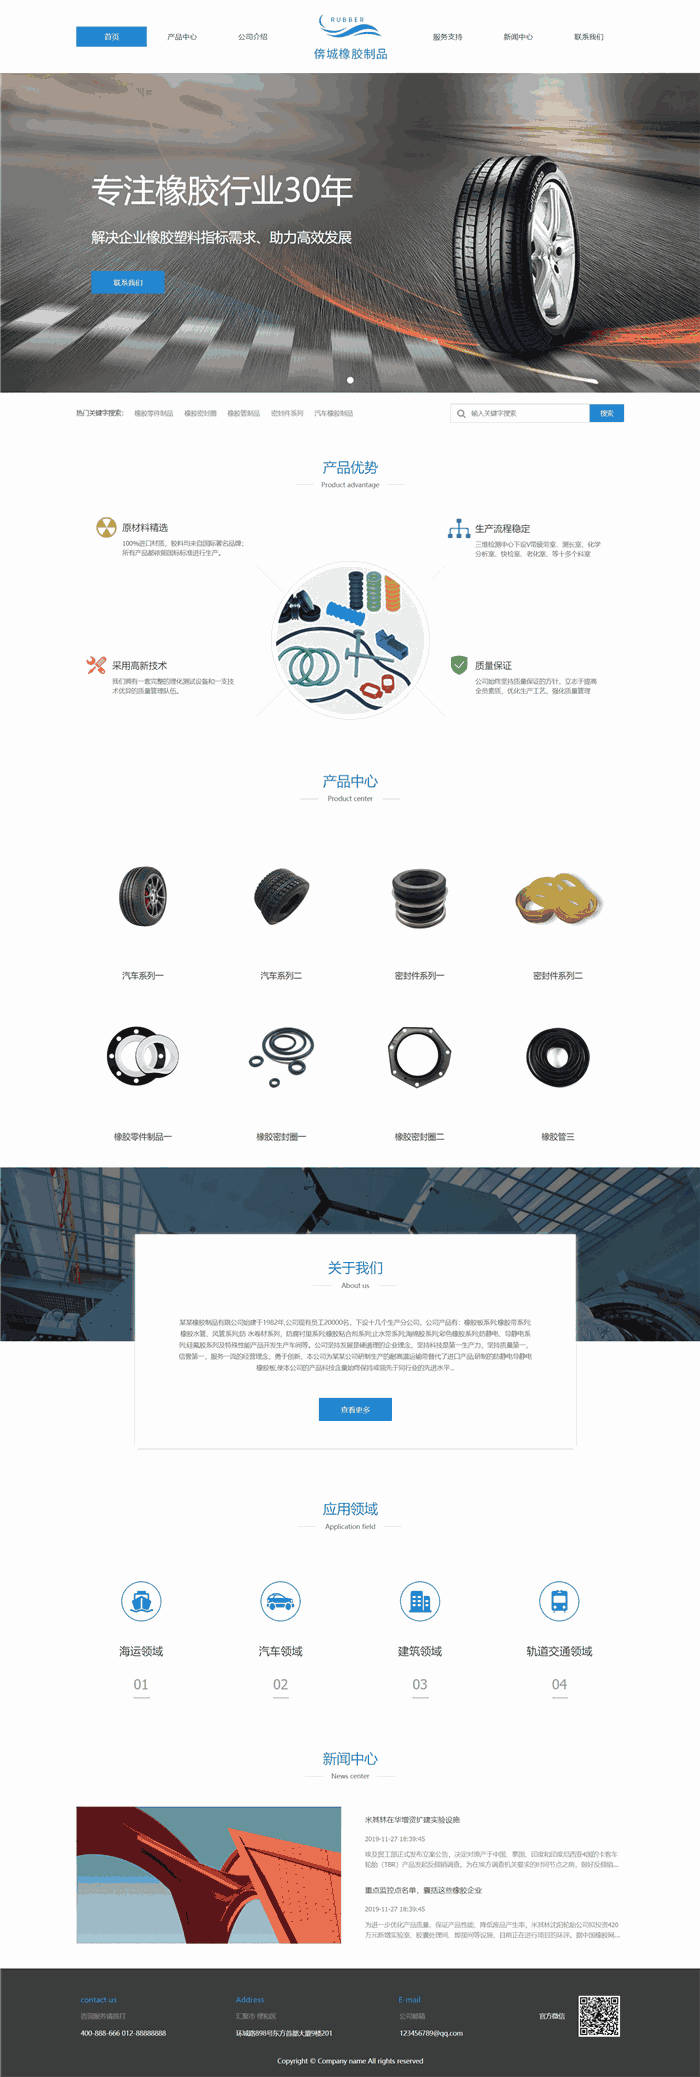 高端大气响应式化学化工塑料橡胶倴城橡胶制品网站模板(PC+手机站)演示图